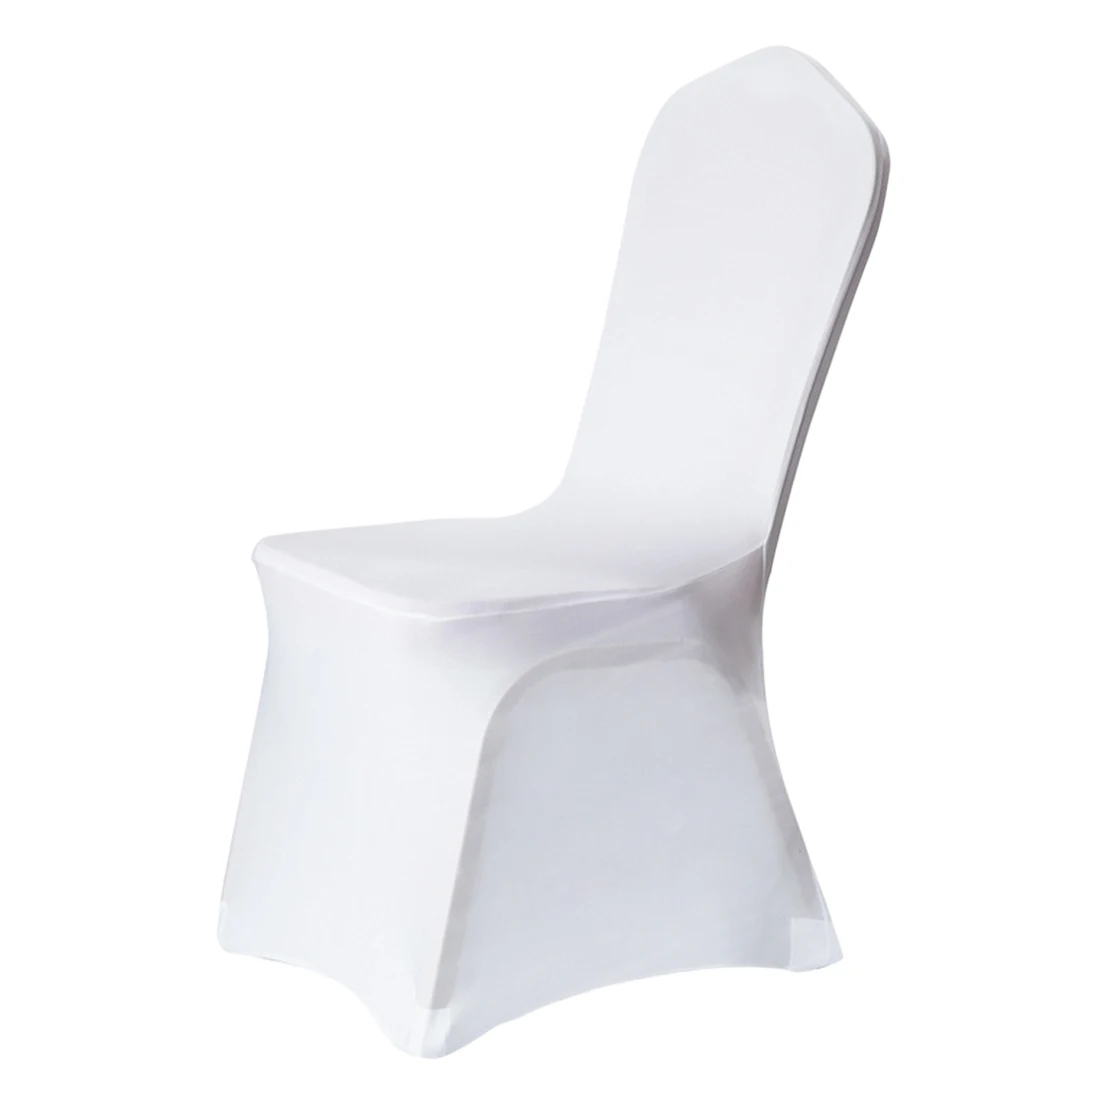 Белые чехлы на стулья для банкета, отеля, столовой, вечерние, Лайкра, Полиэстер, спандекс, 10 шт., 25 шт., 50 шт., 100 шт - Цвет: Белый